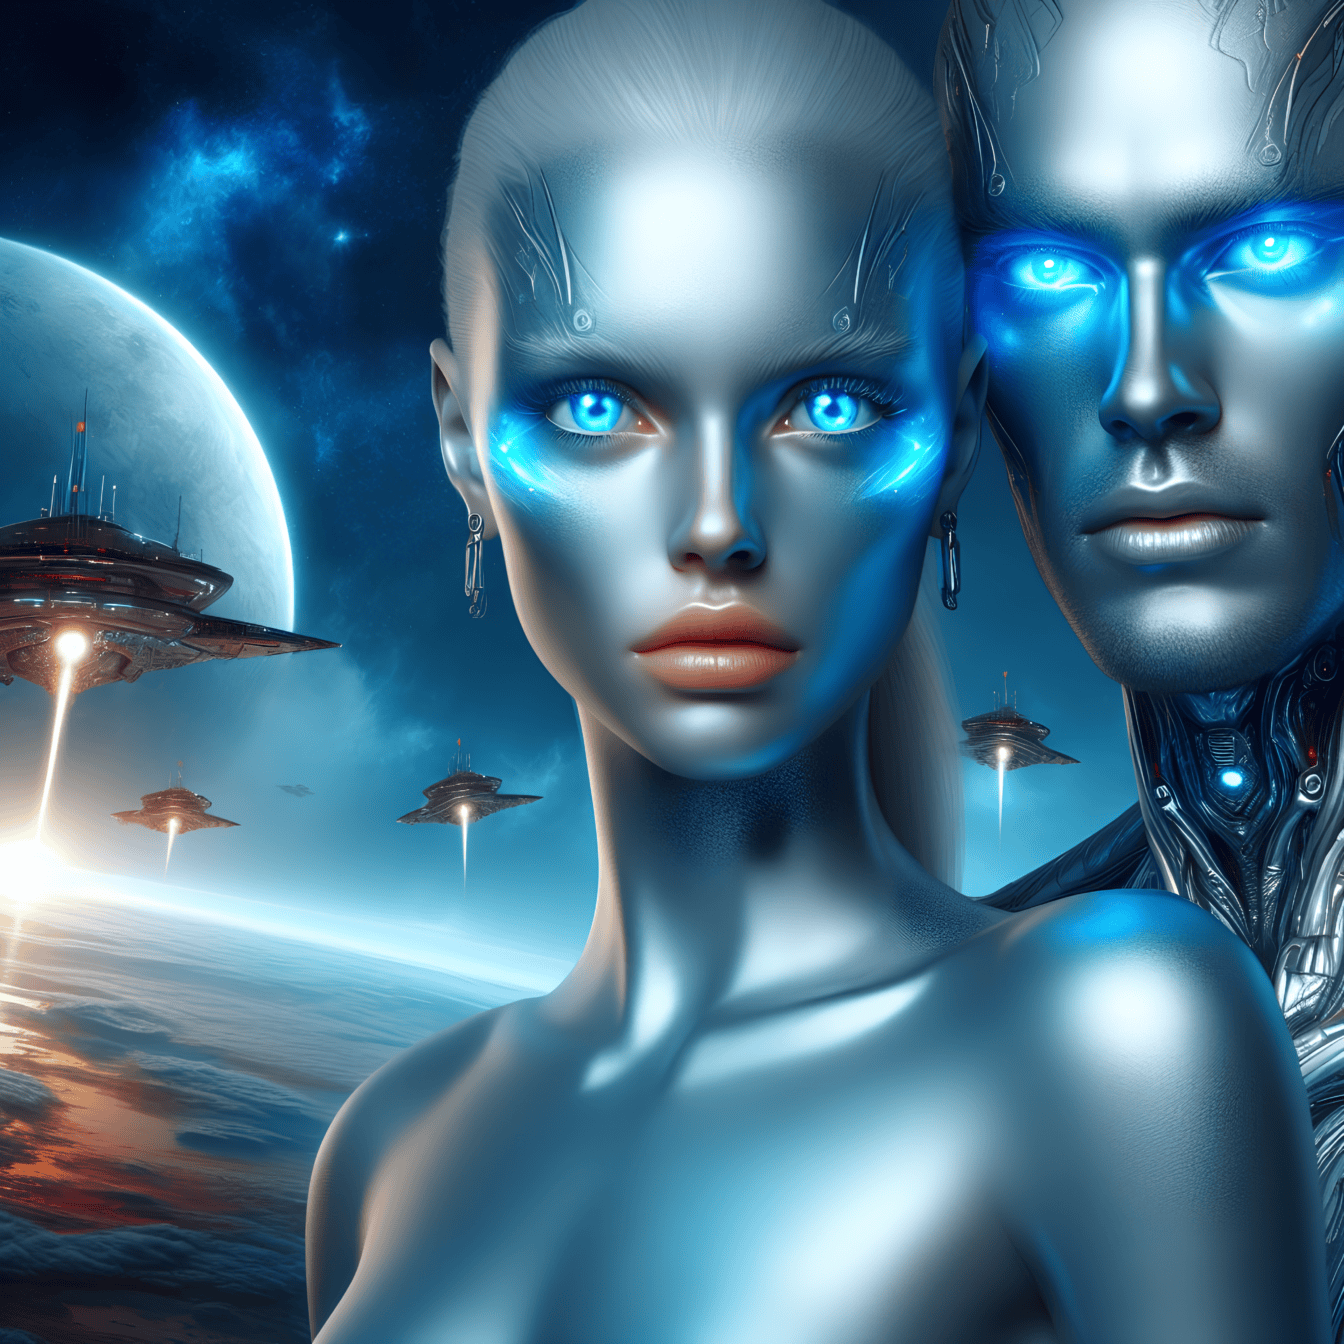 Retrato de um macho e fêmea humanoide extraterrestre cyborg-robots